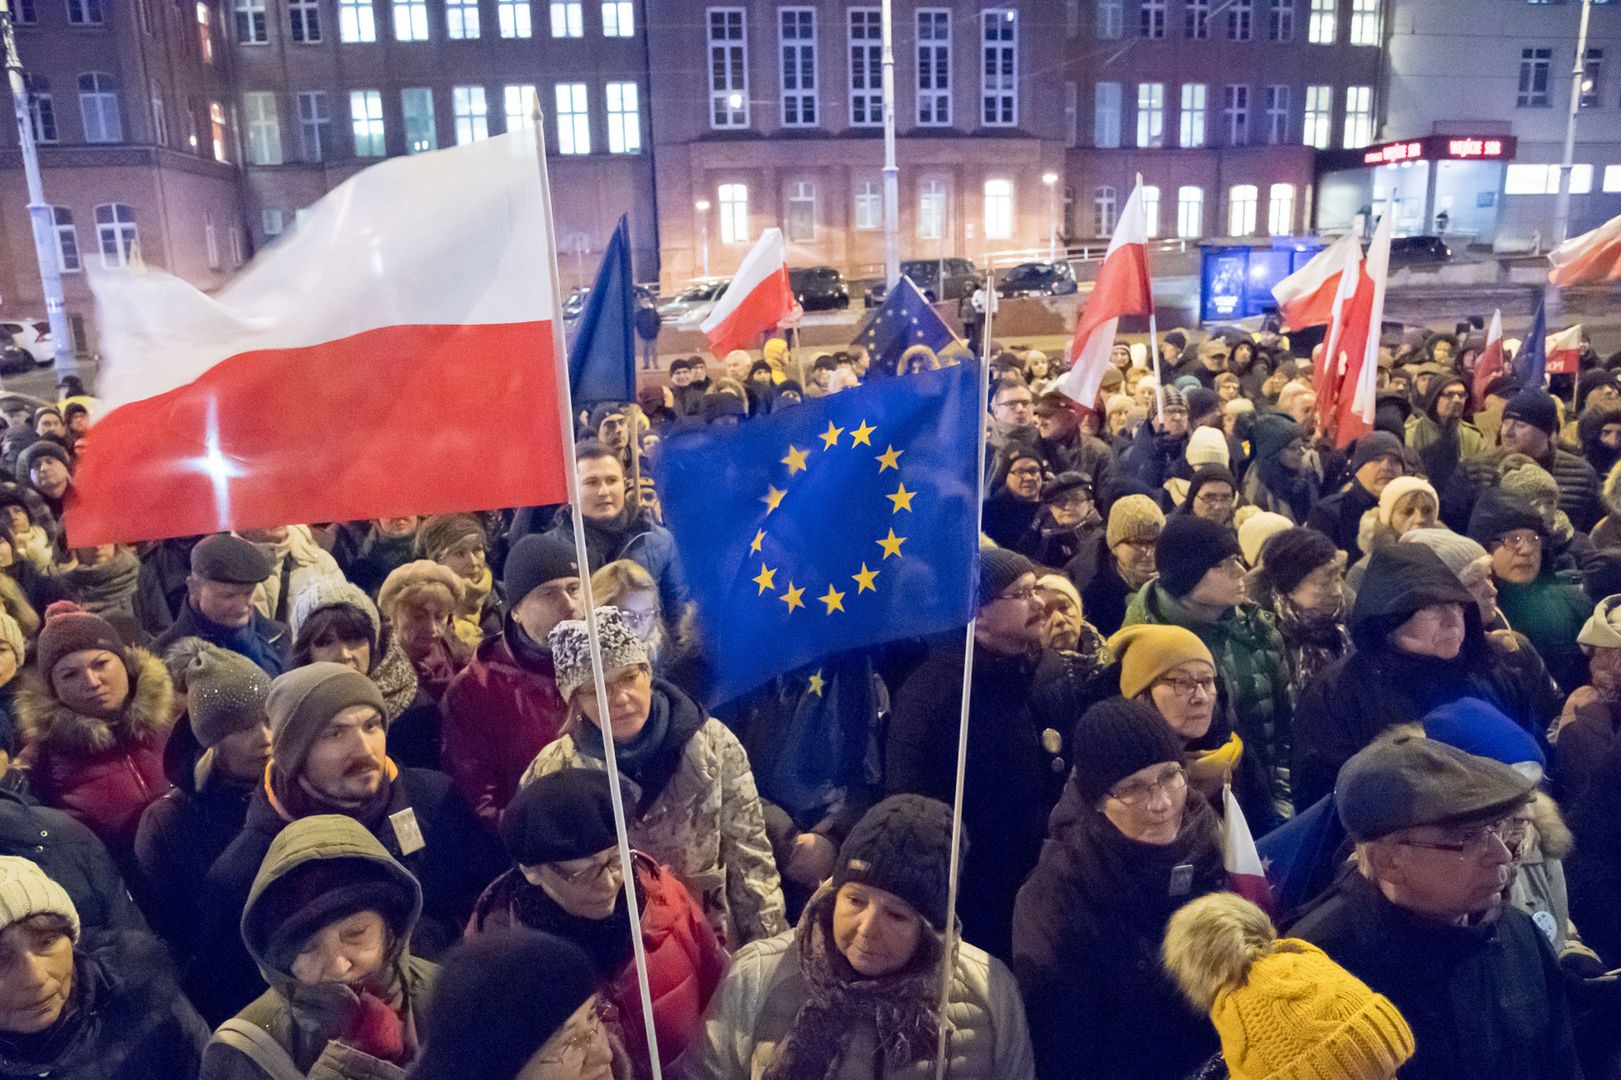 BBC analizuje sytuację w Polsce. "Mogą wyjść z Unii Europejskiej"